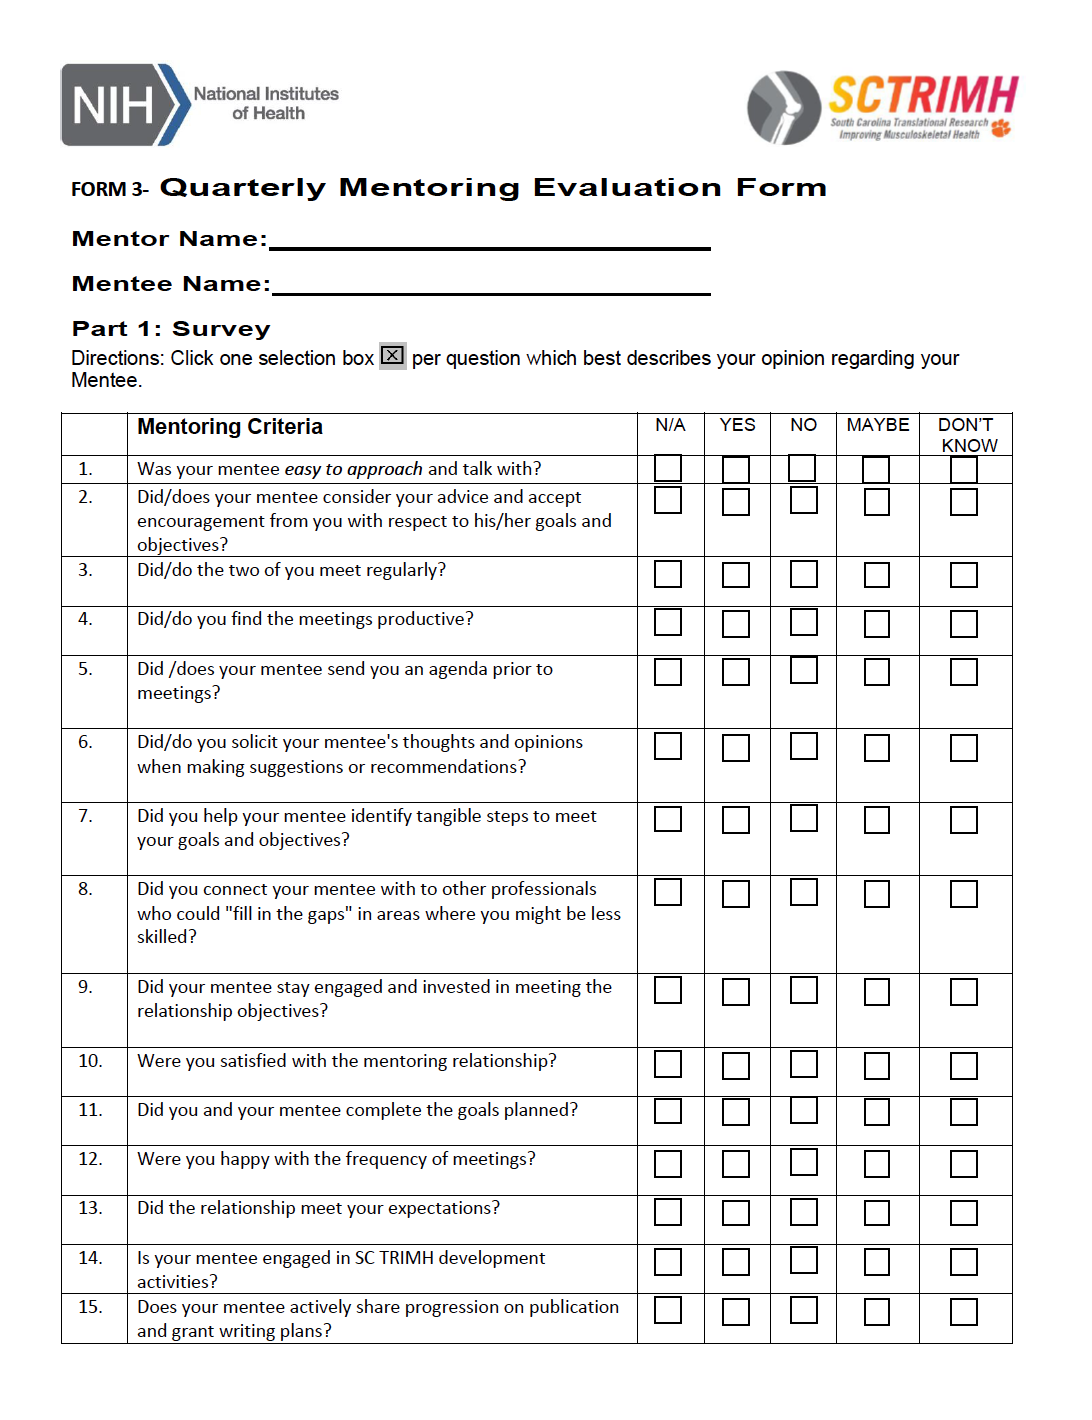 Quarterly mentoring evaluation form